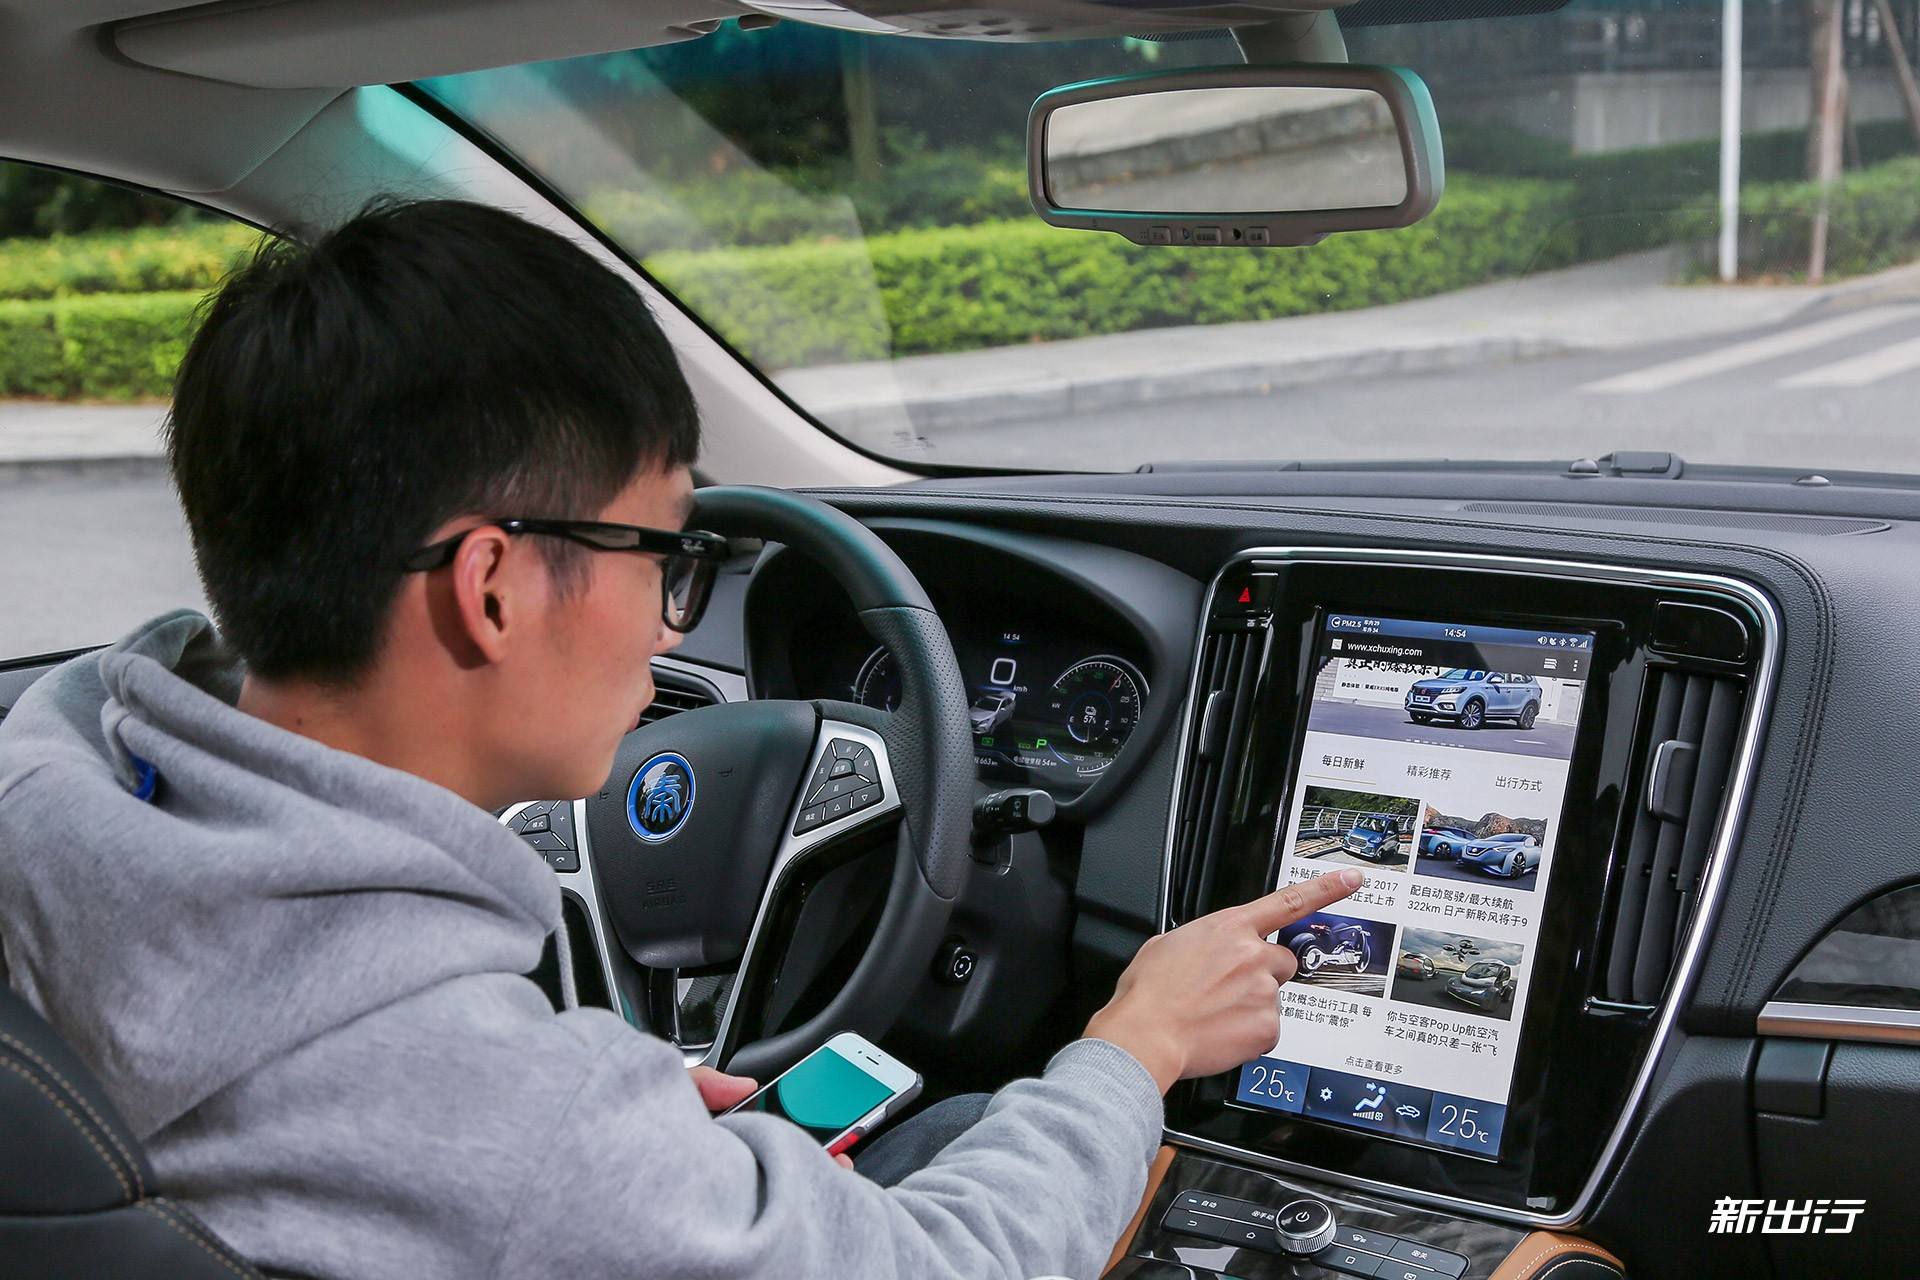 商用显示、车载及新零售将成为触摸屏的三大应用市场